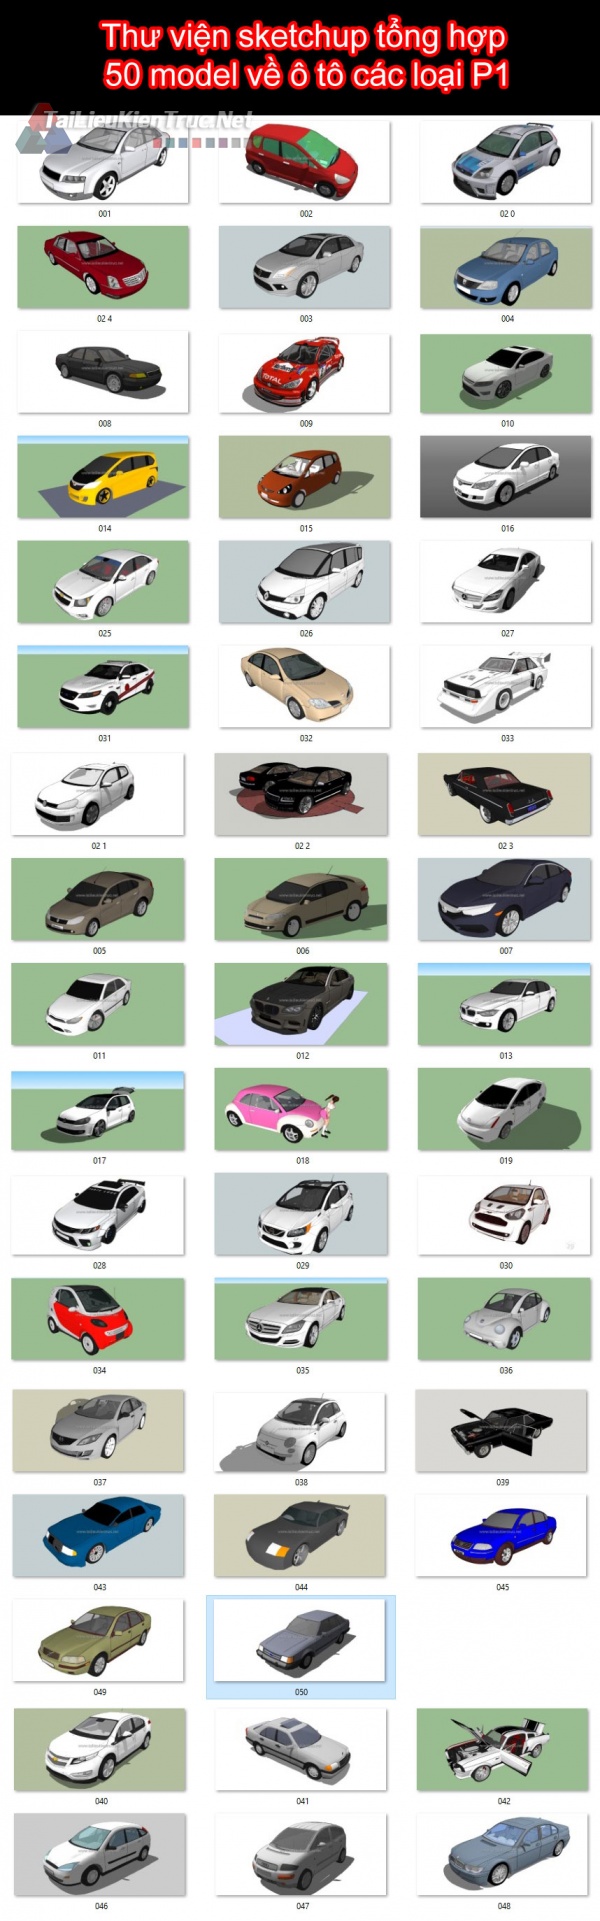 Thư viện sketchup tổng hợp 50 model về ô tô các loại P1